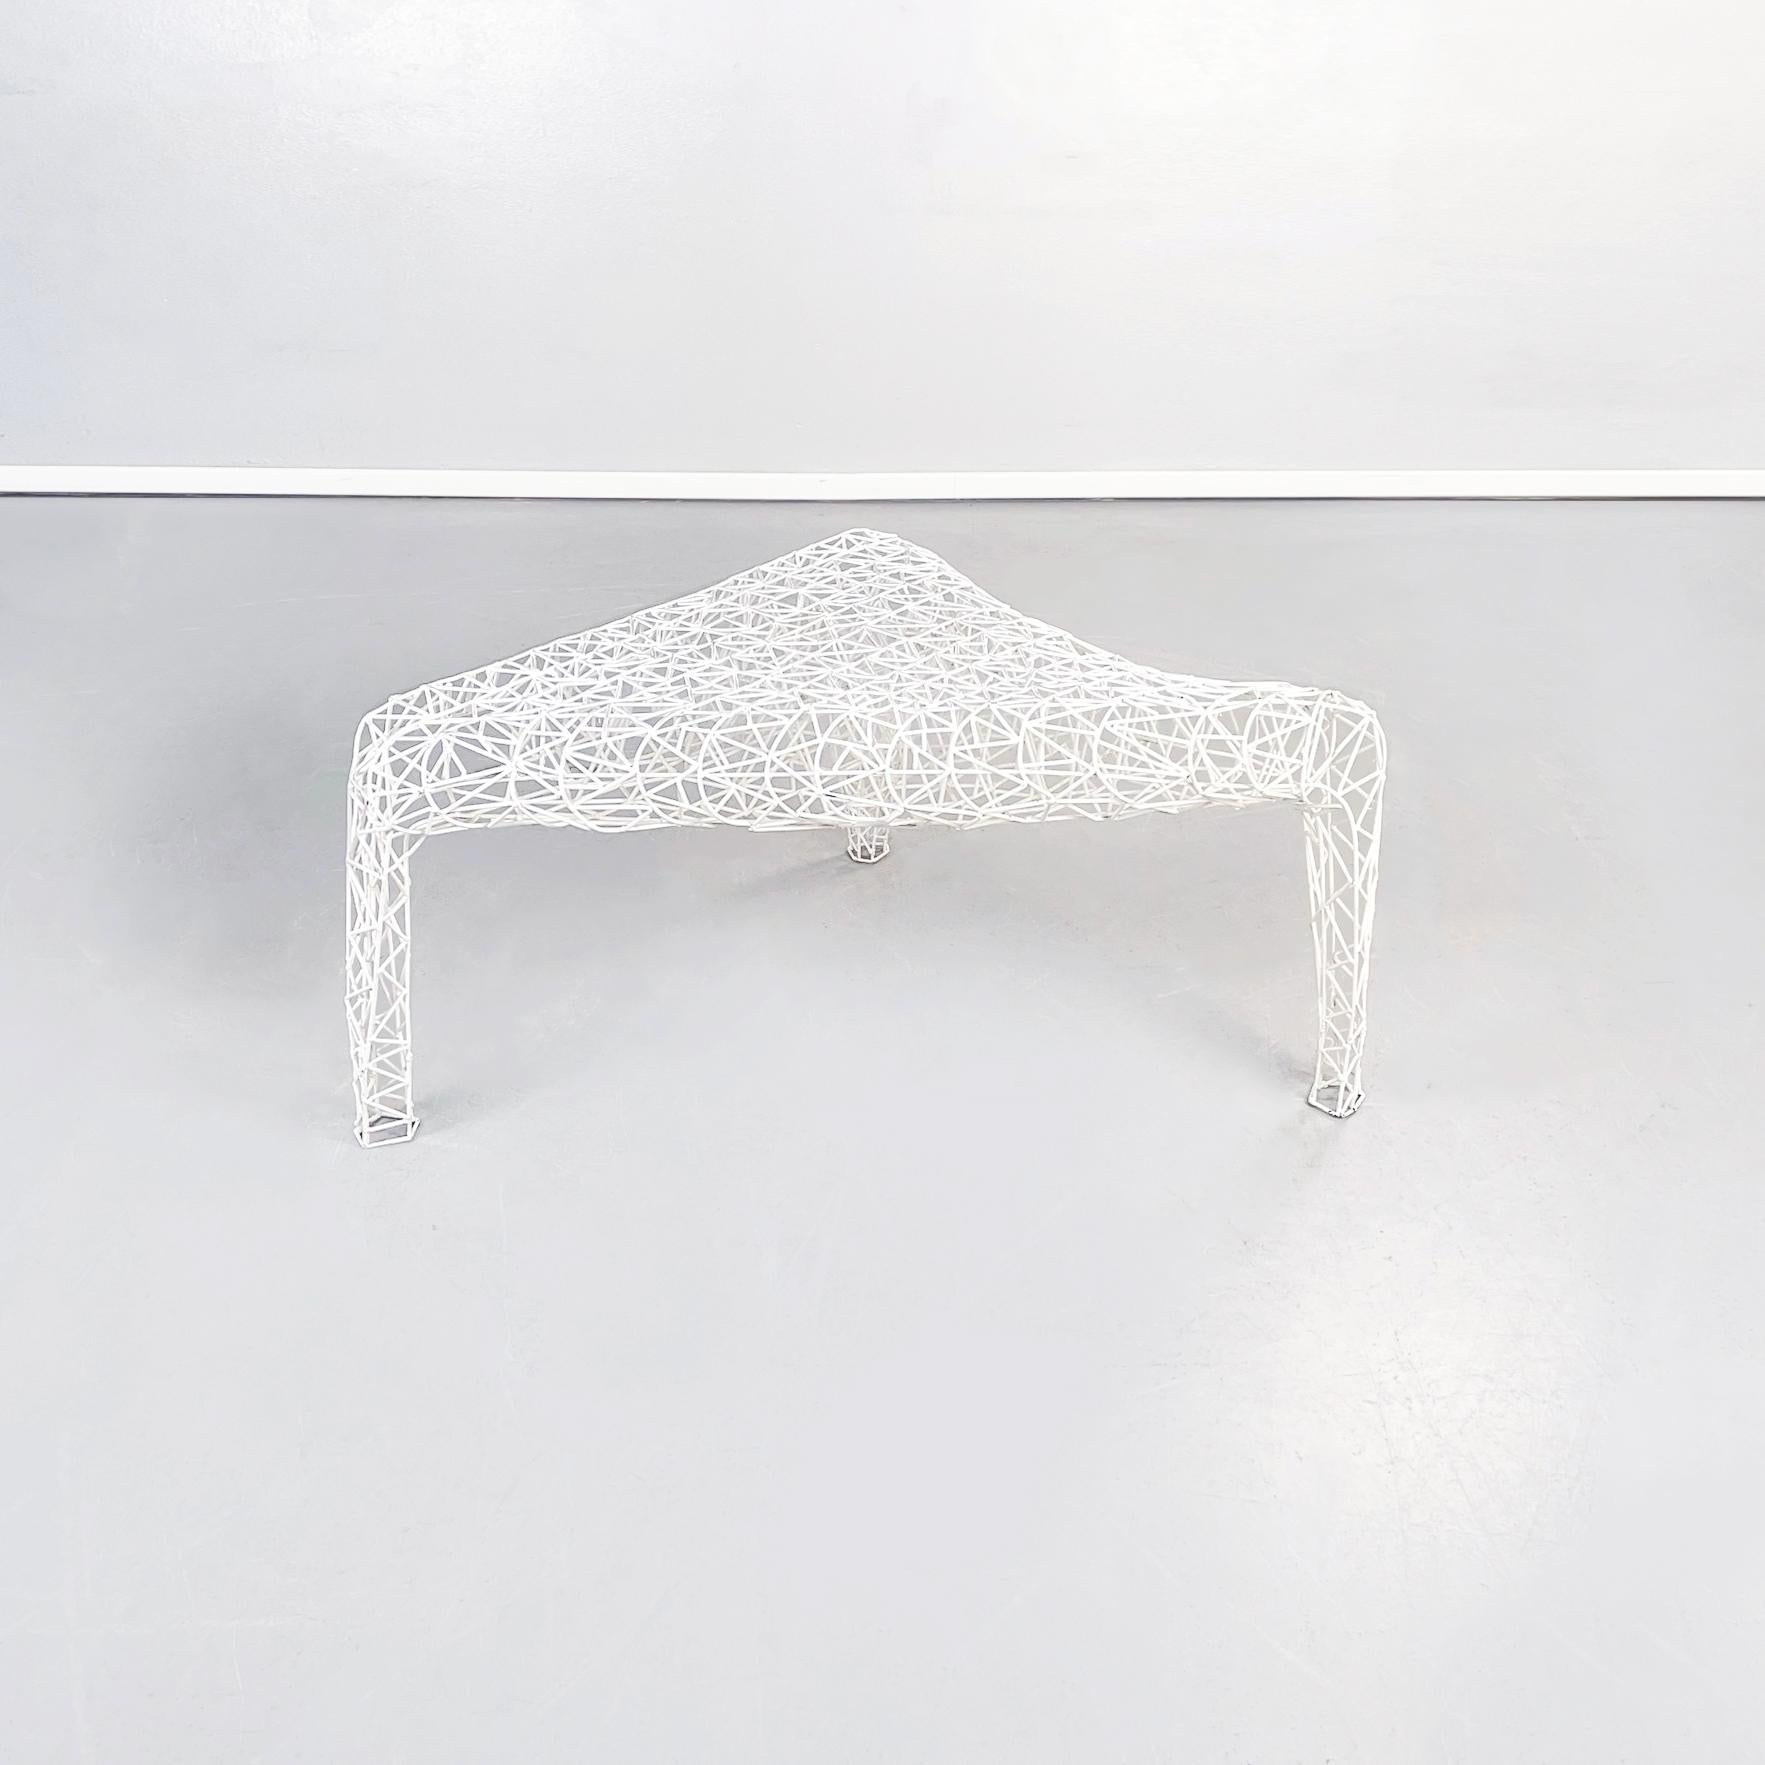 Table basse extérieure post-moderne italienne en métal tubulaire blanc, années 2000
Table basse de forme irrégulière en métal peint en blanc. L'ensemble de la table est constitué d'un tissage dense de fins tubes métalliques. Le sommet peut être